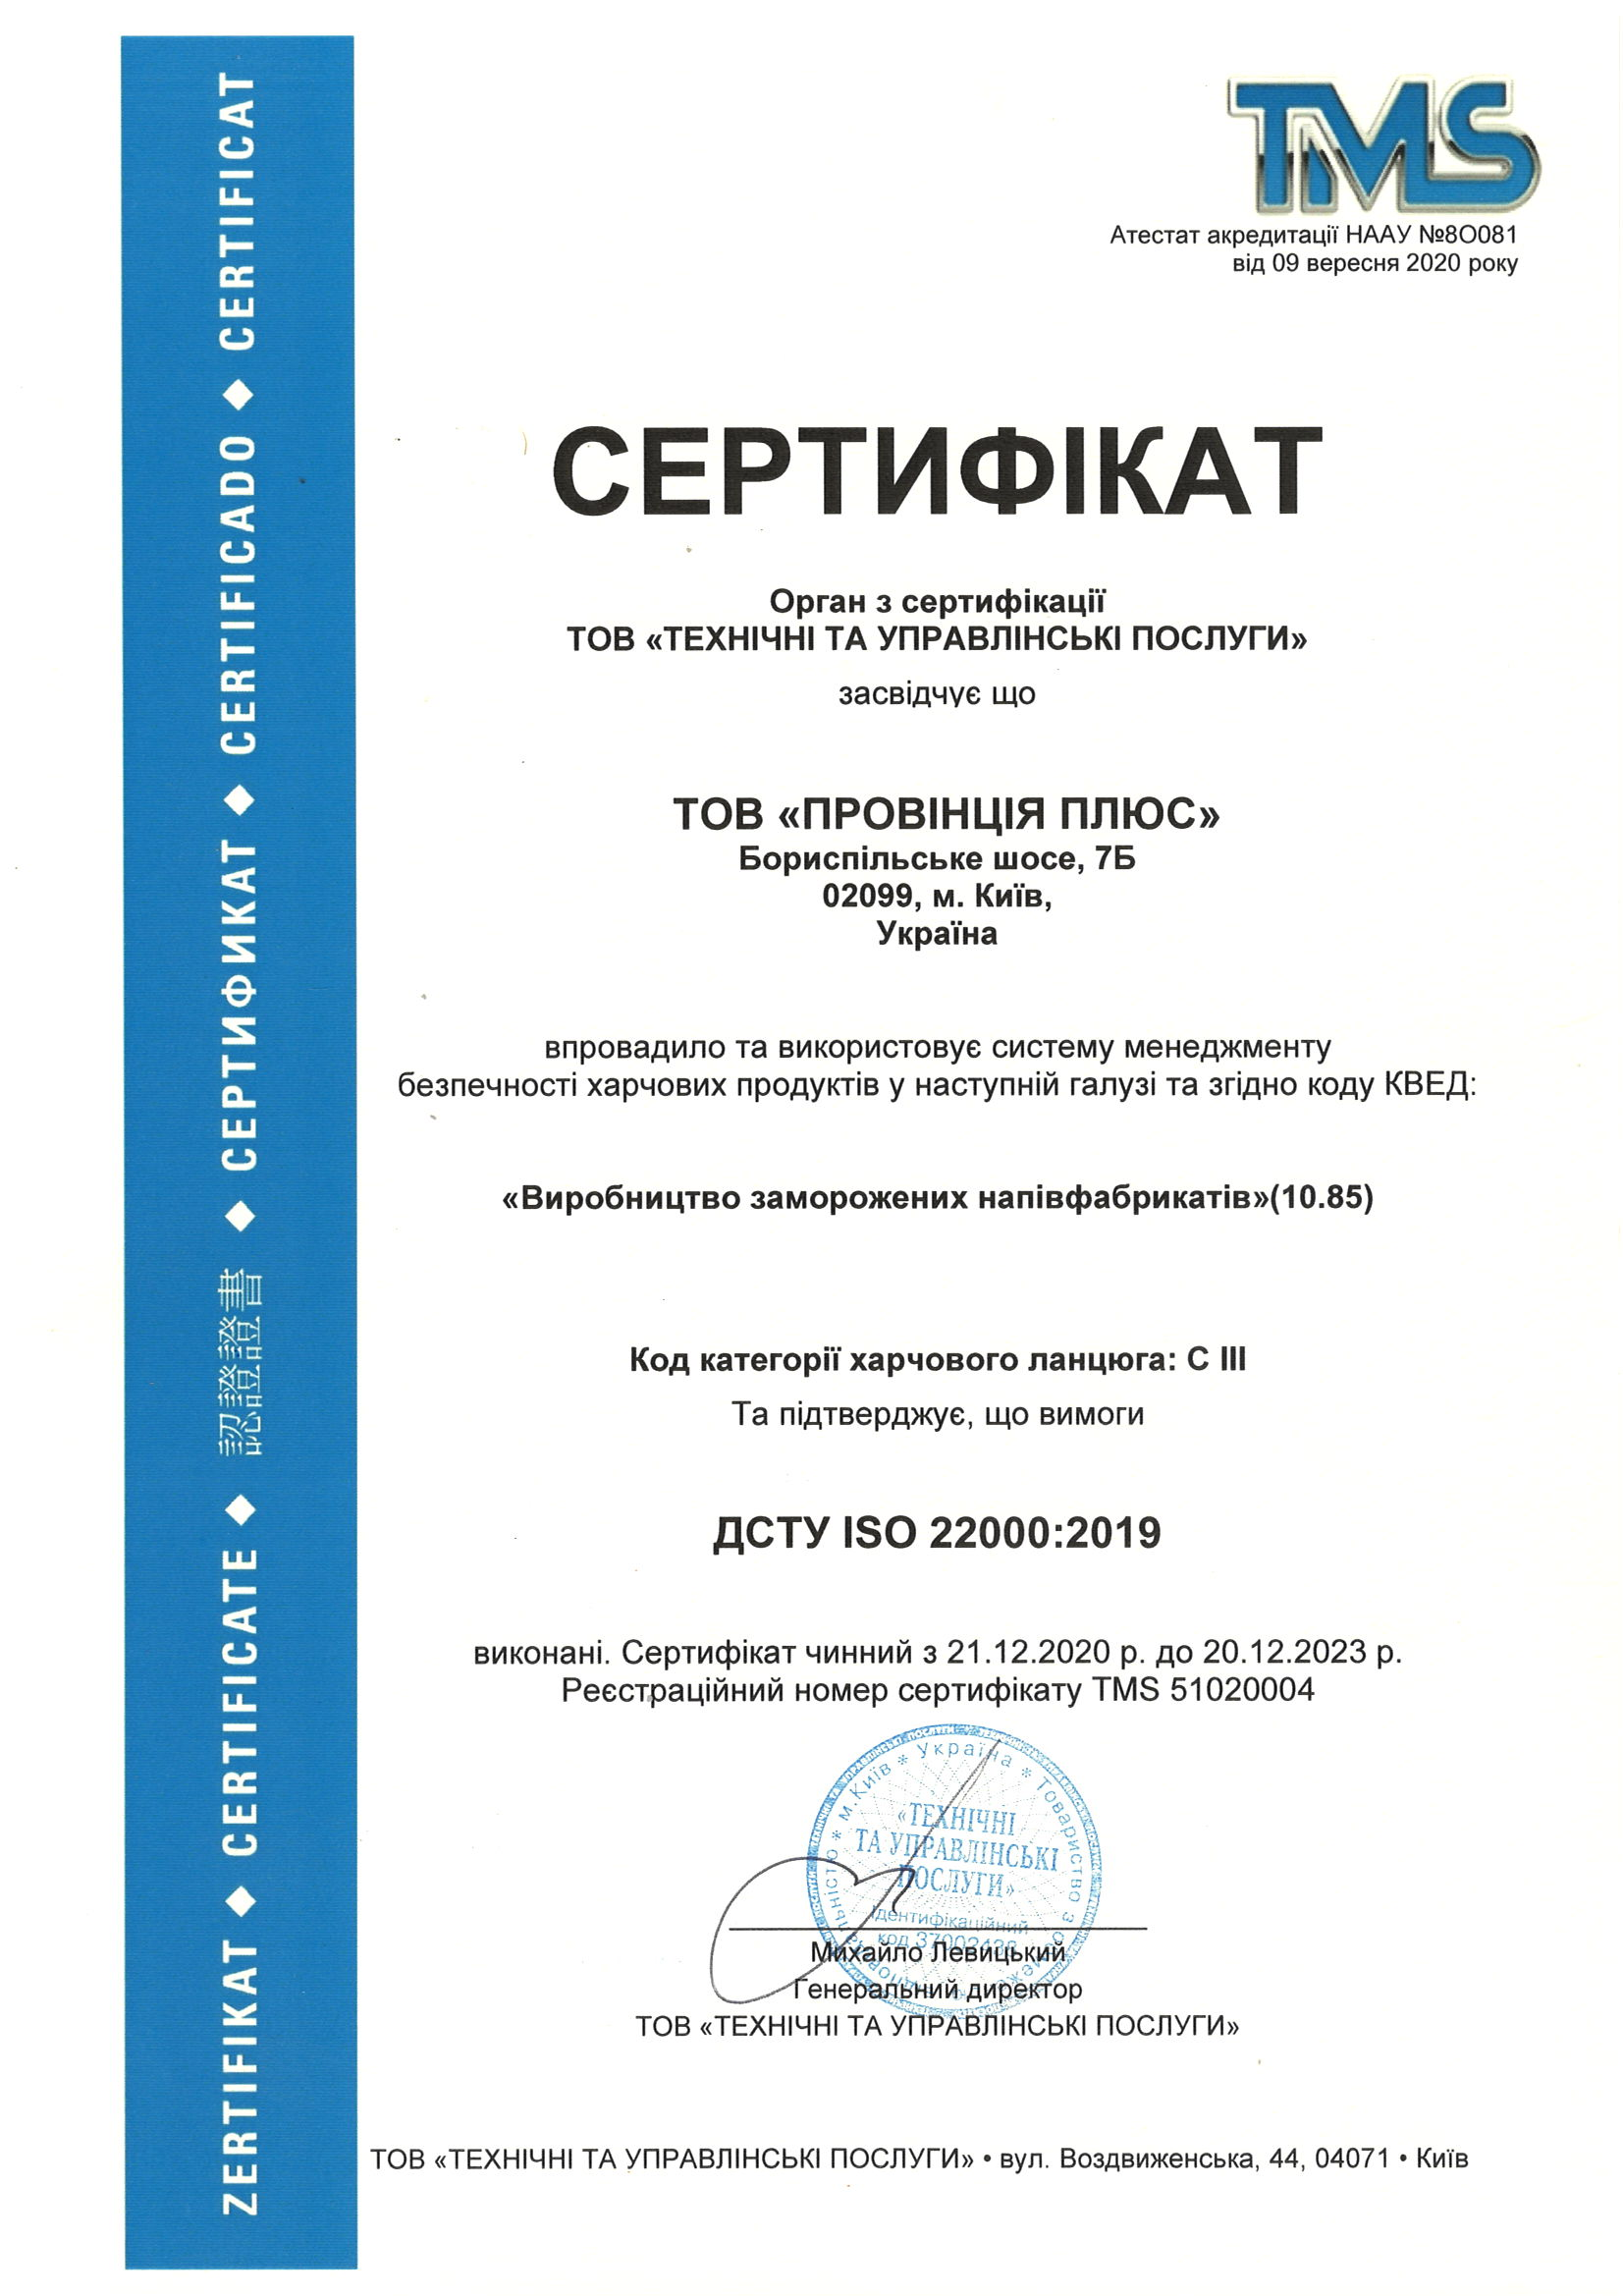 Nitrato di calcio Solukaltsy 1 kg Ucraina M. Obukhiv, vul. Kyivska